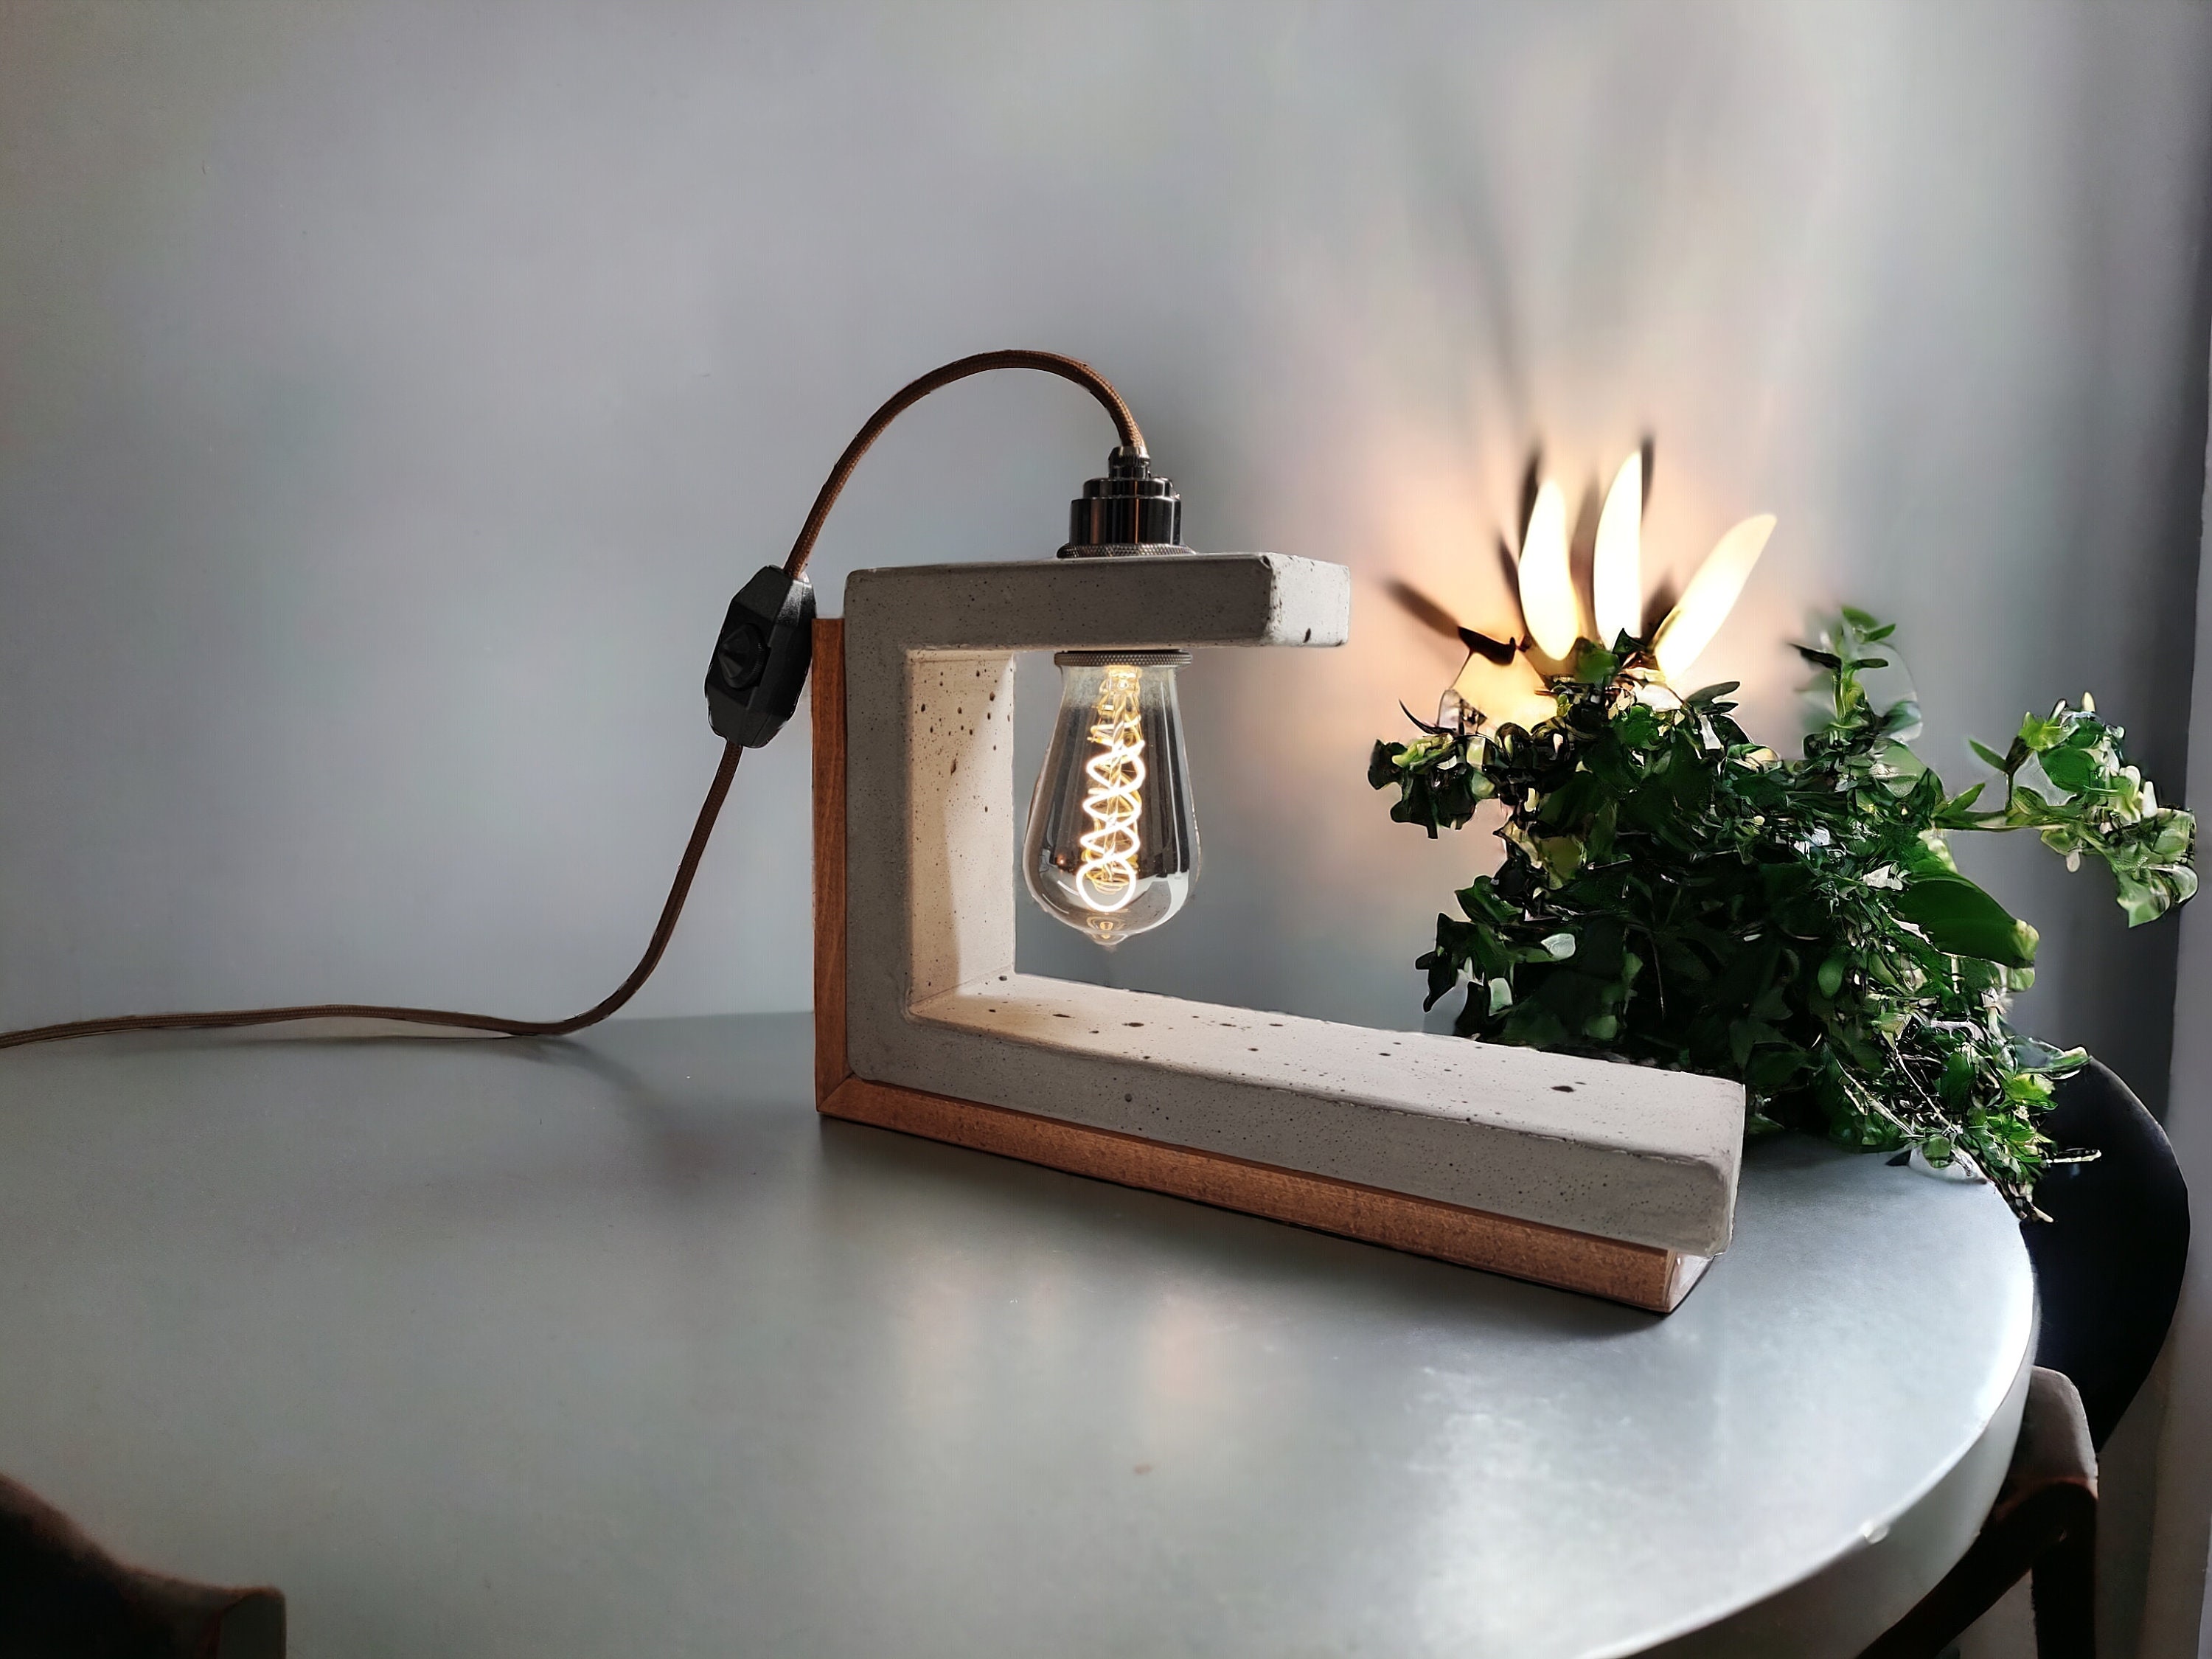 OPTANGLE anthracite Lampe En Béton / Concrete Lamp, Lampe En Béton